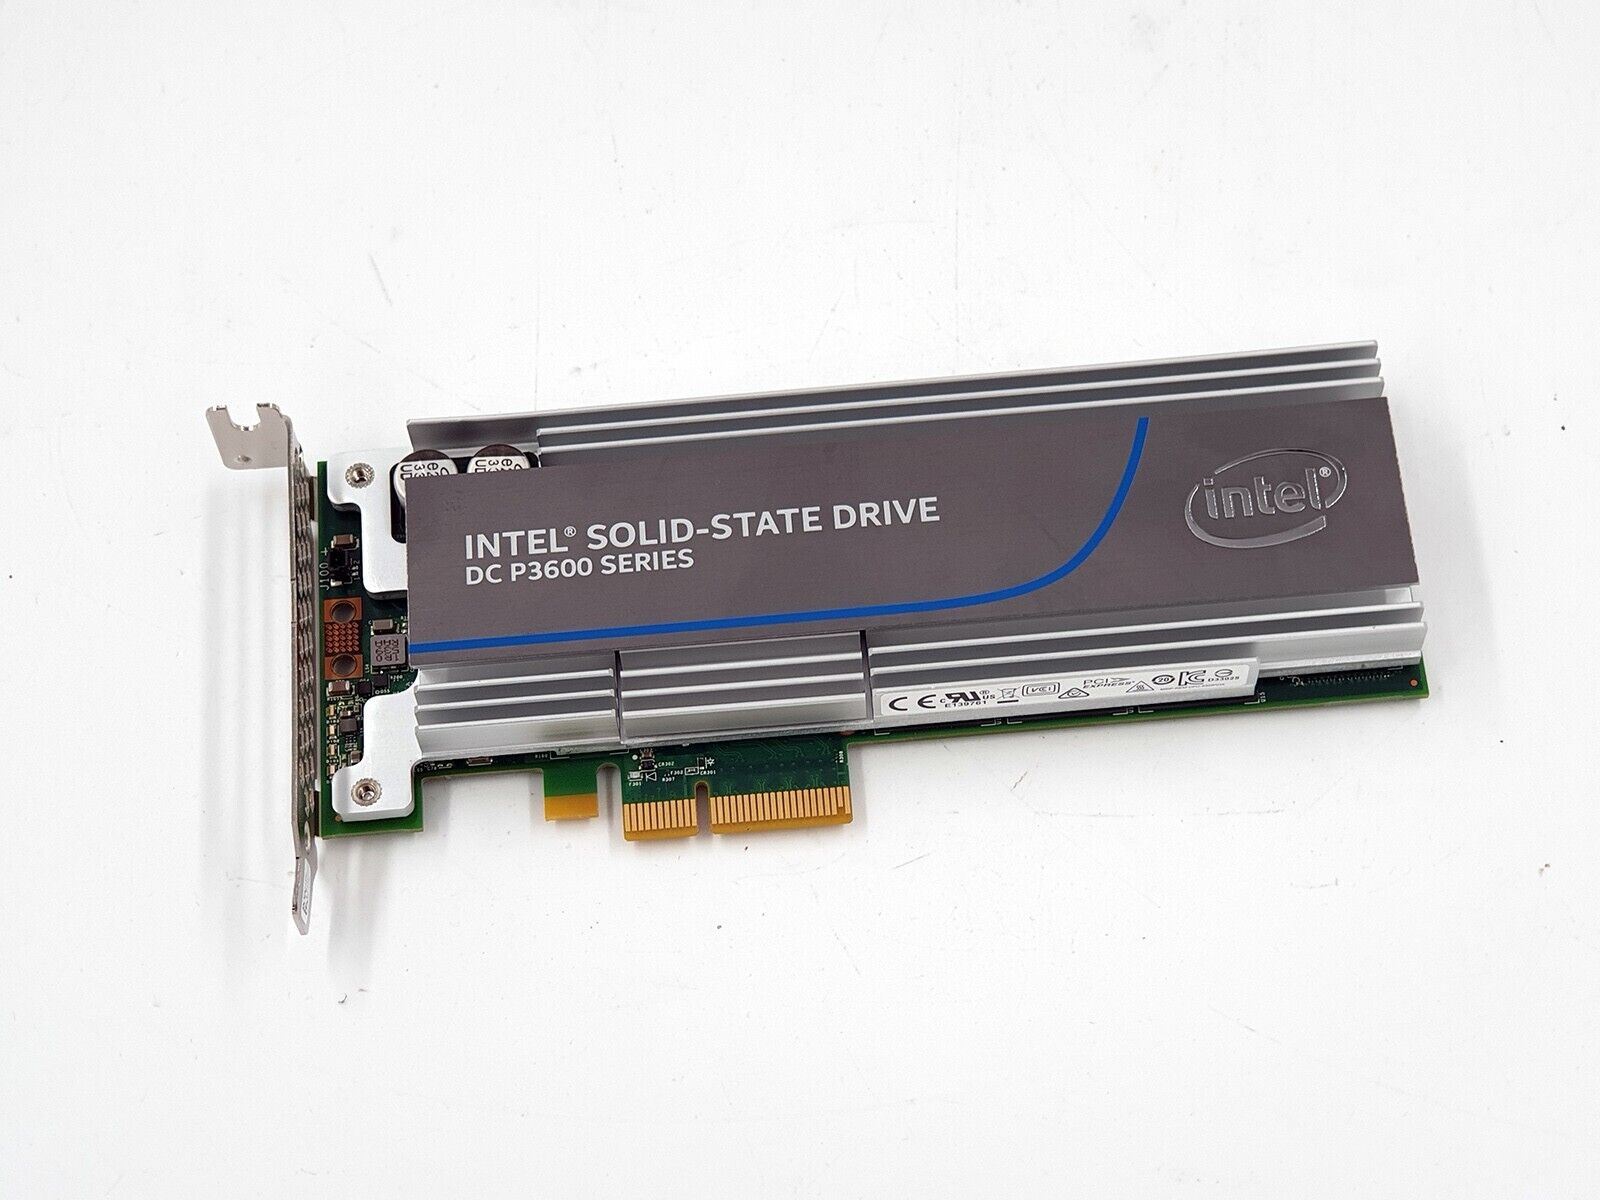 Intel DC P3600 Series SSDPEDME016T4S 1.6 TB PCIe SSD Oracle P3605